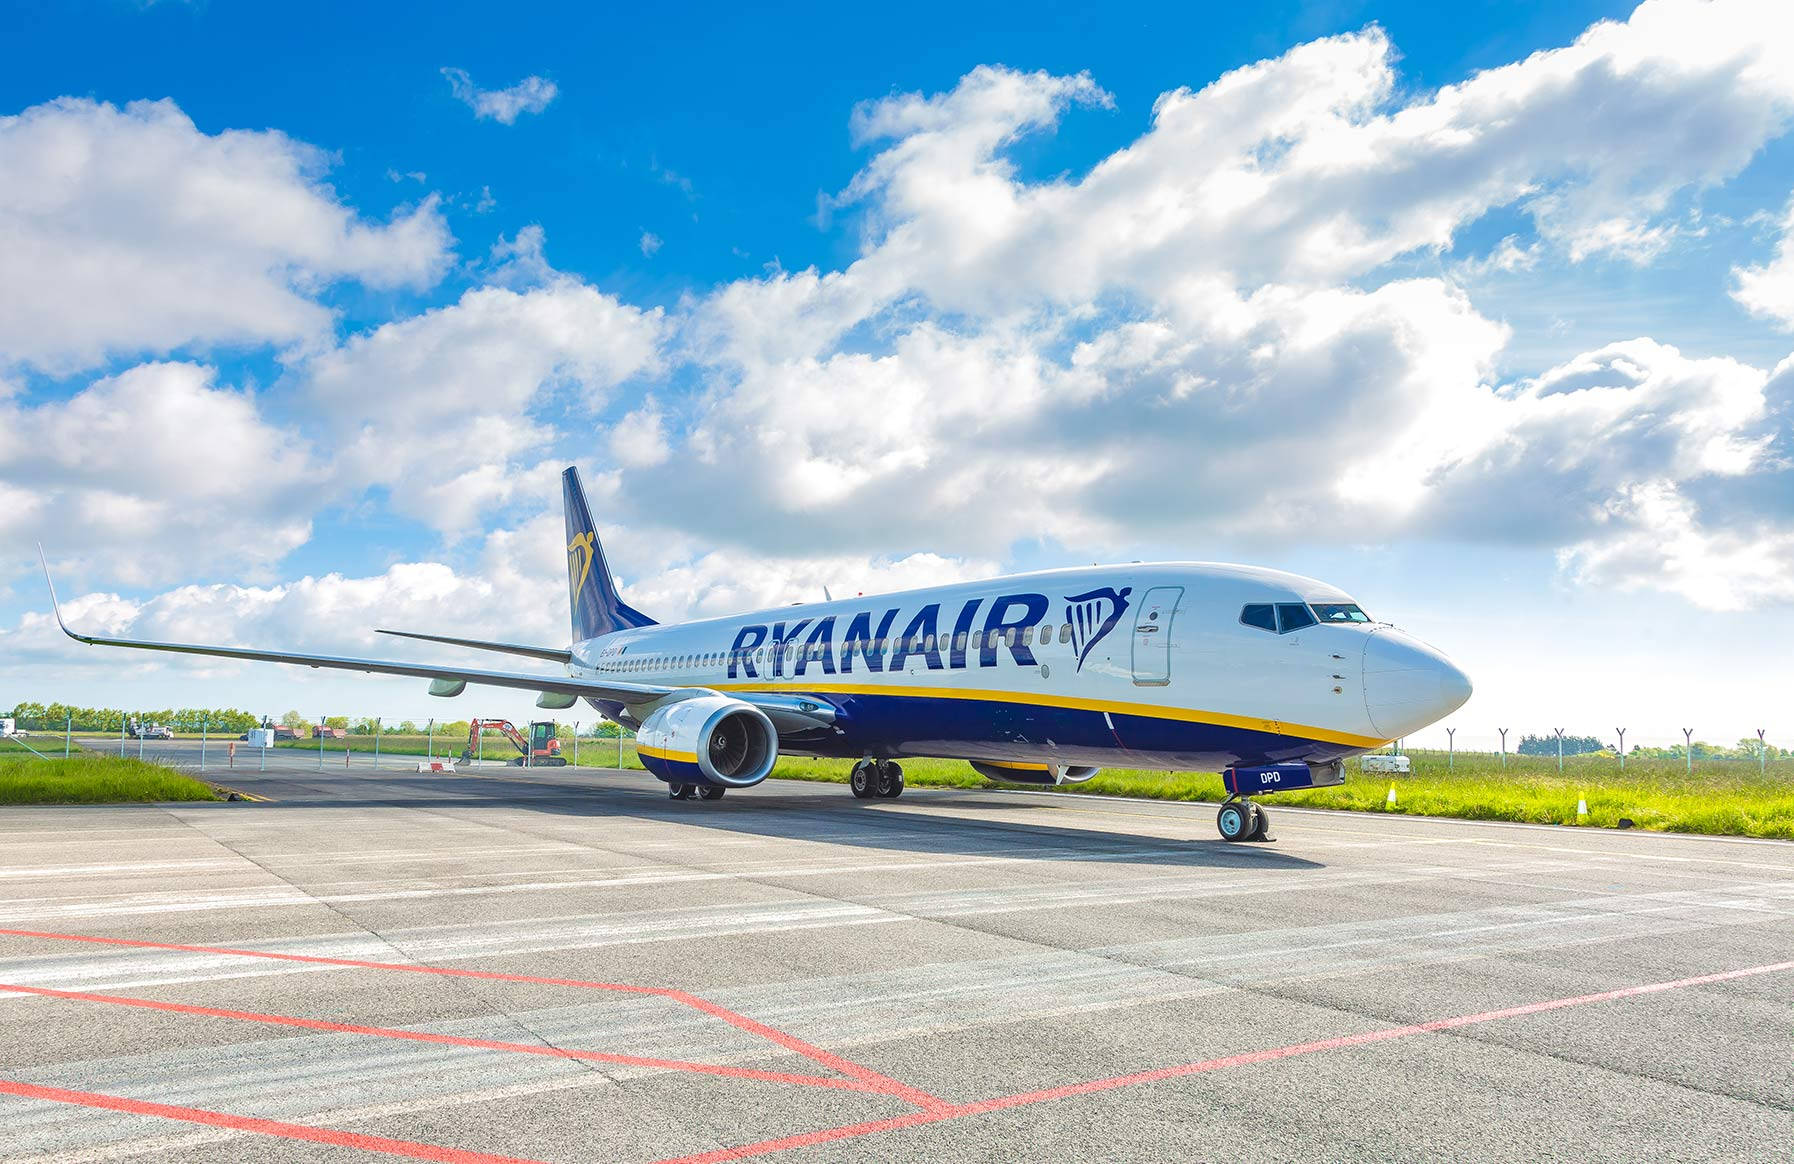 Flygplanfrån Ryanair På Landningsbanan Under Himlen. Wallpaper